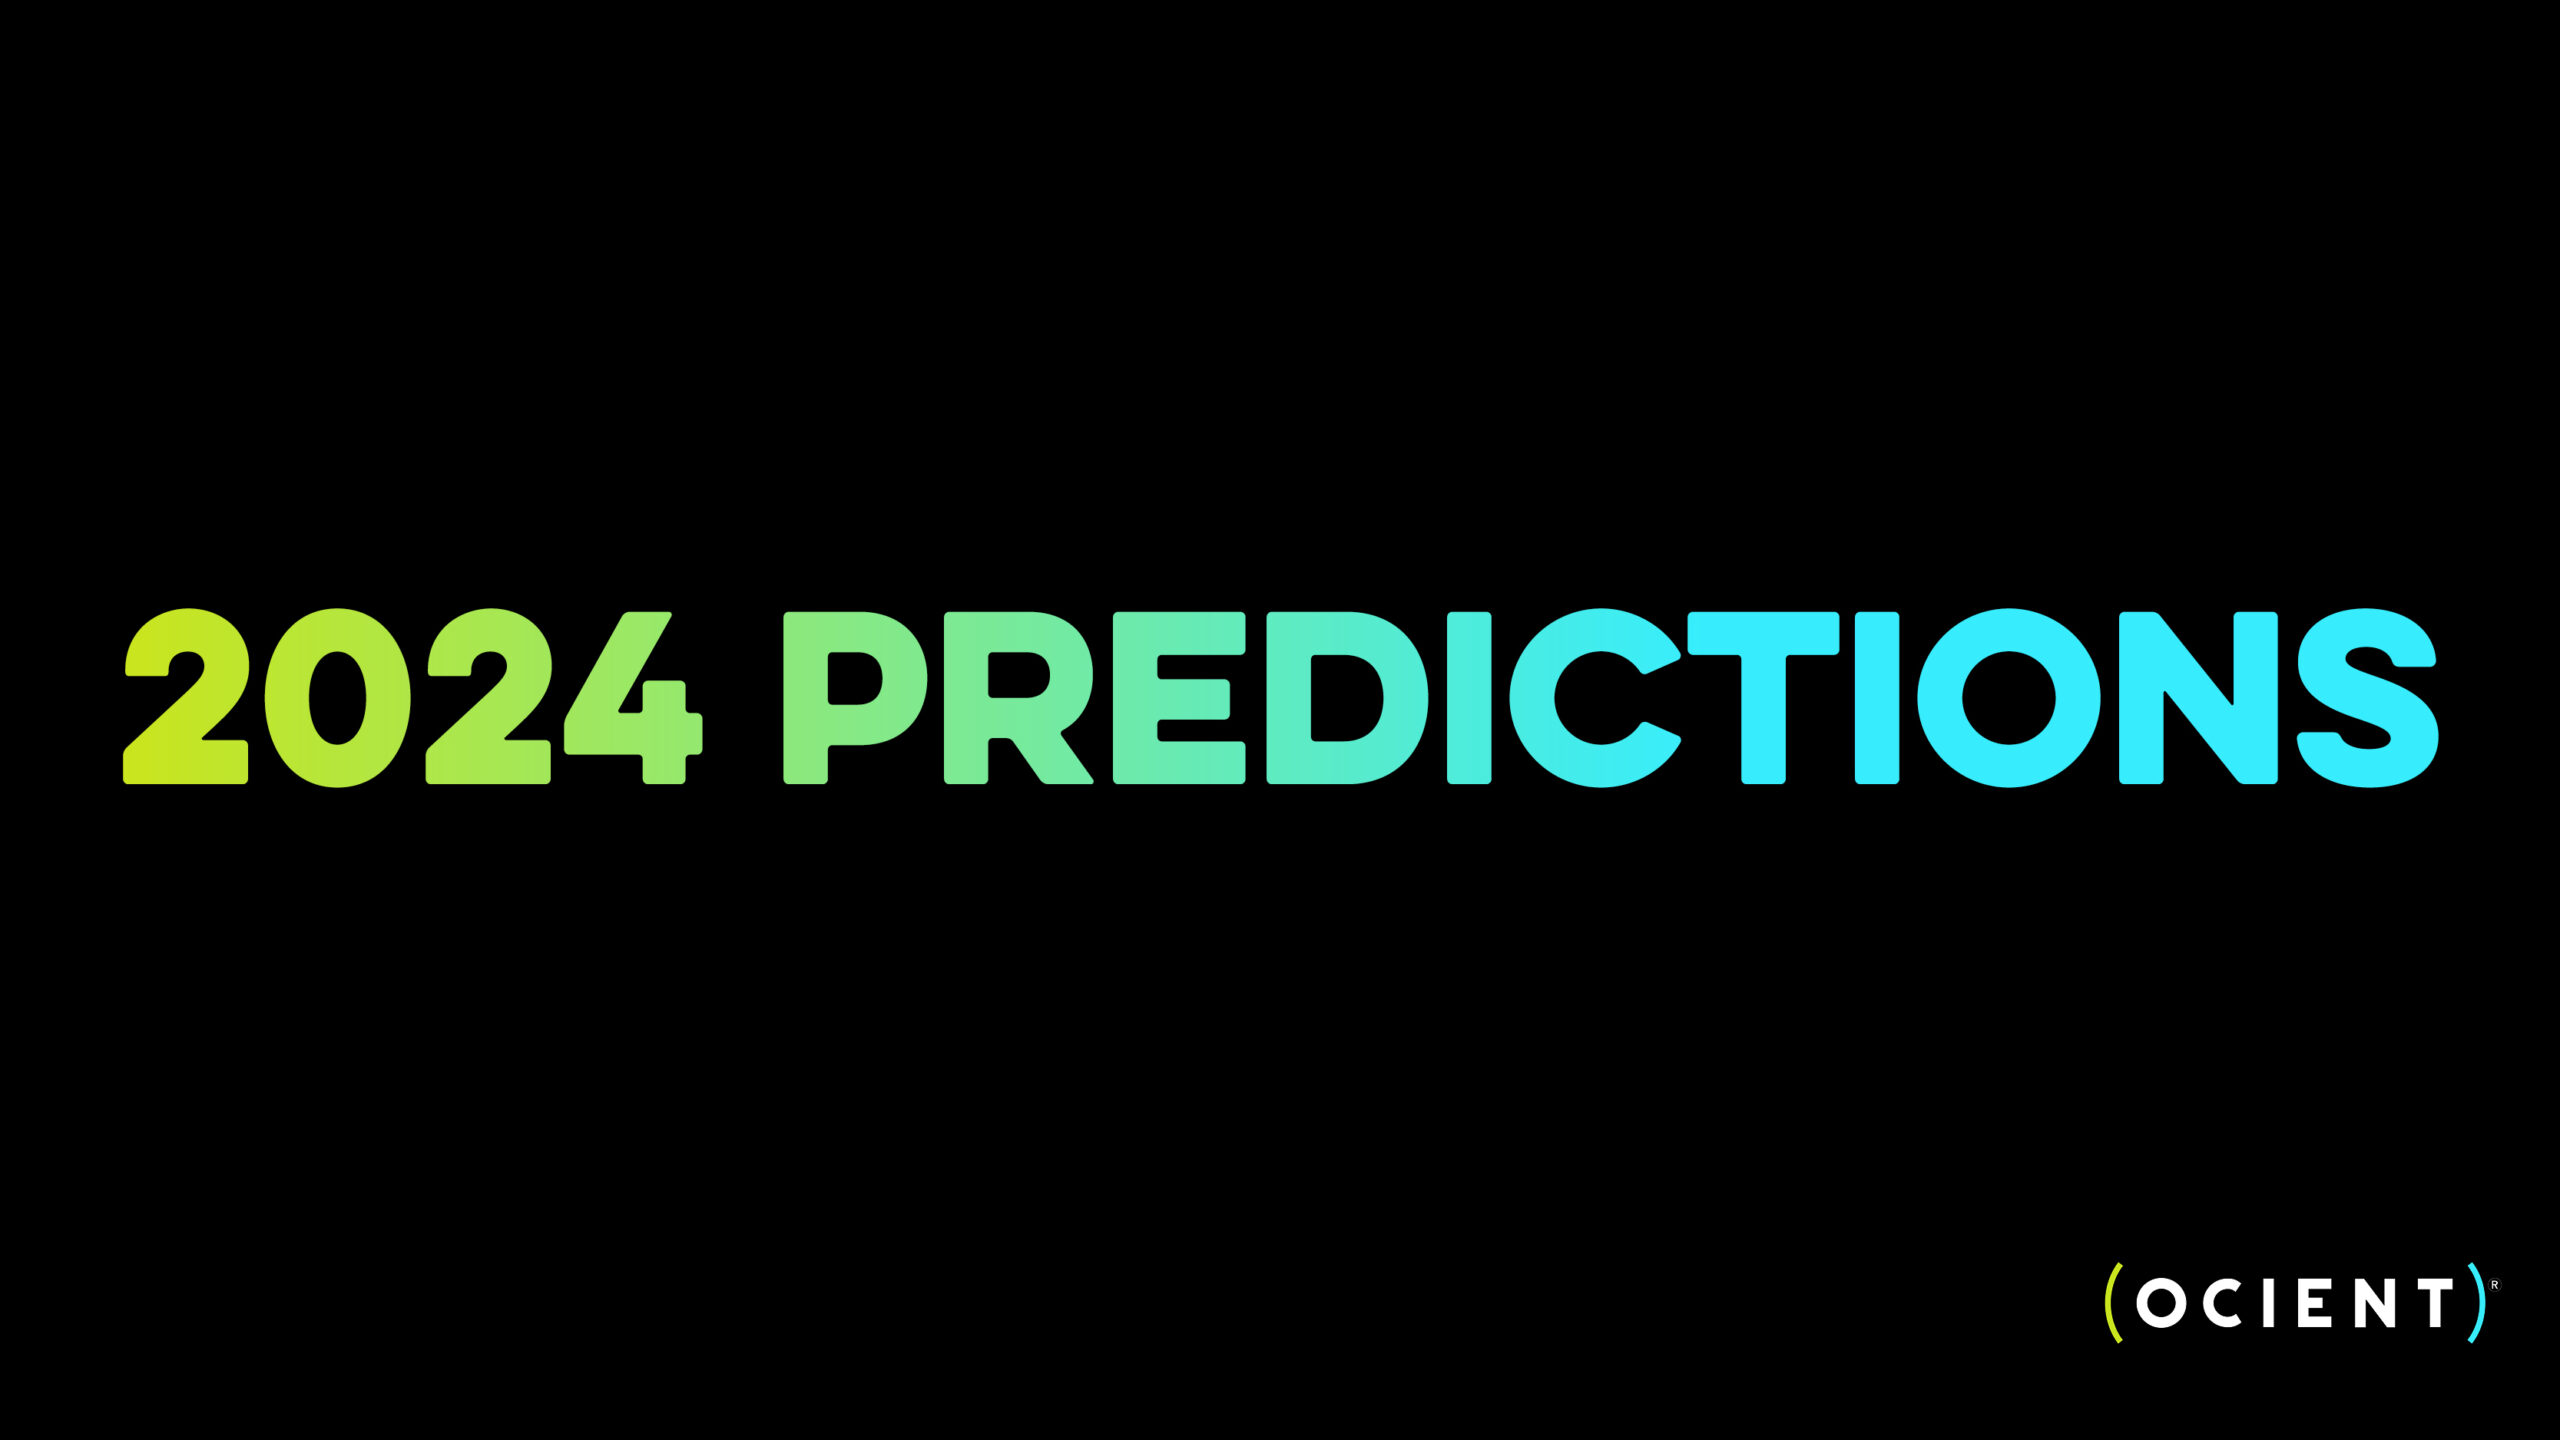 2024 Predictions Ocient